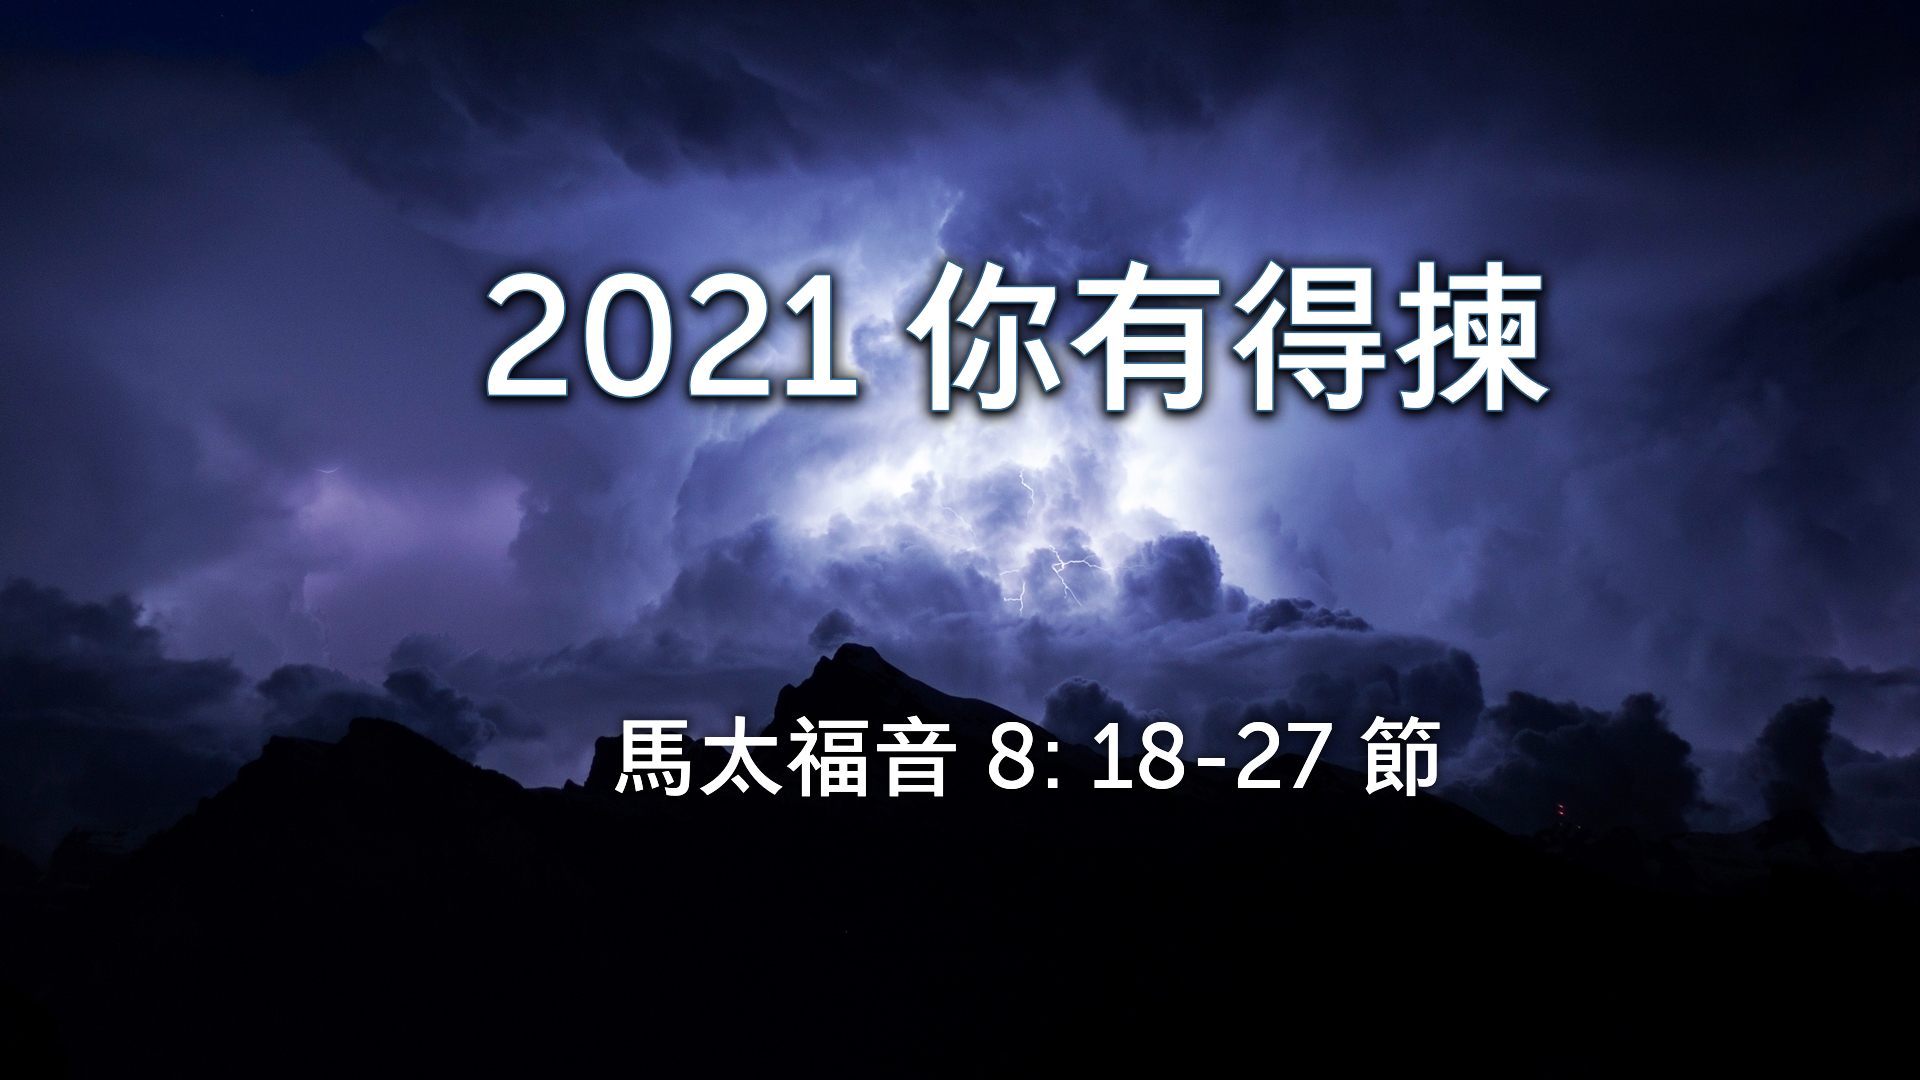 2021年1月03日 - 講道錄像 信息: 2021 你有得揀  經文: 馬太福音 8: 18-27節 講員:  葉少斌傳道